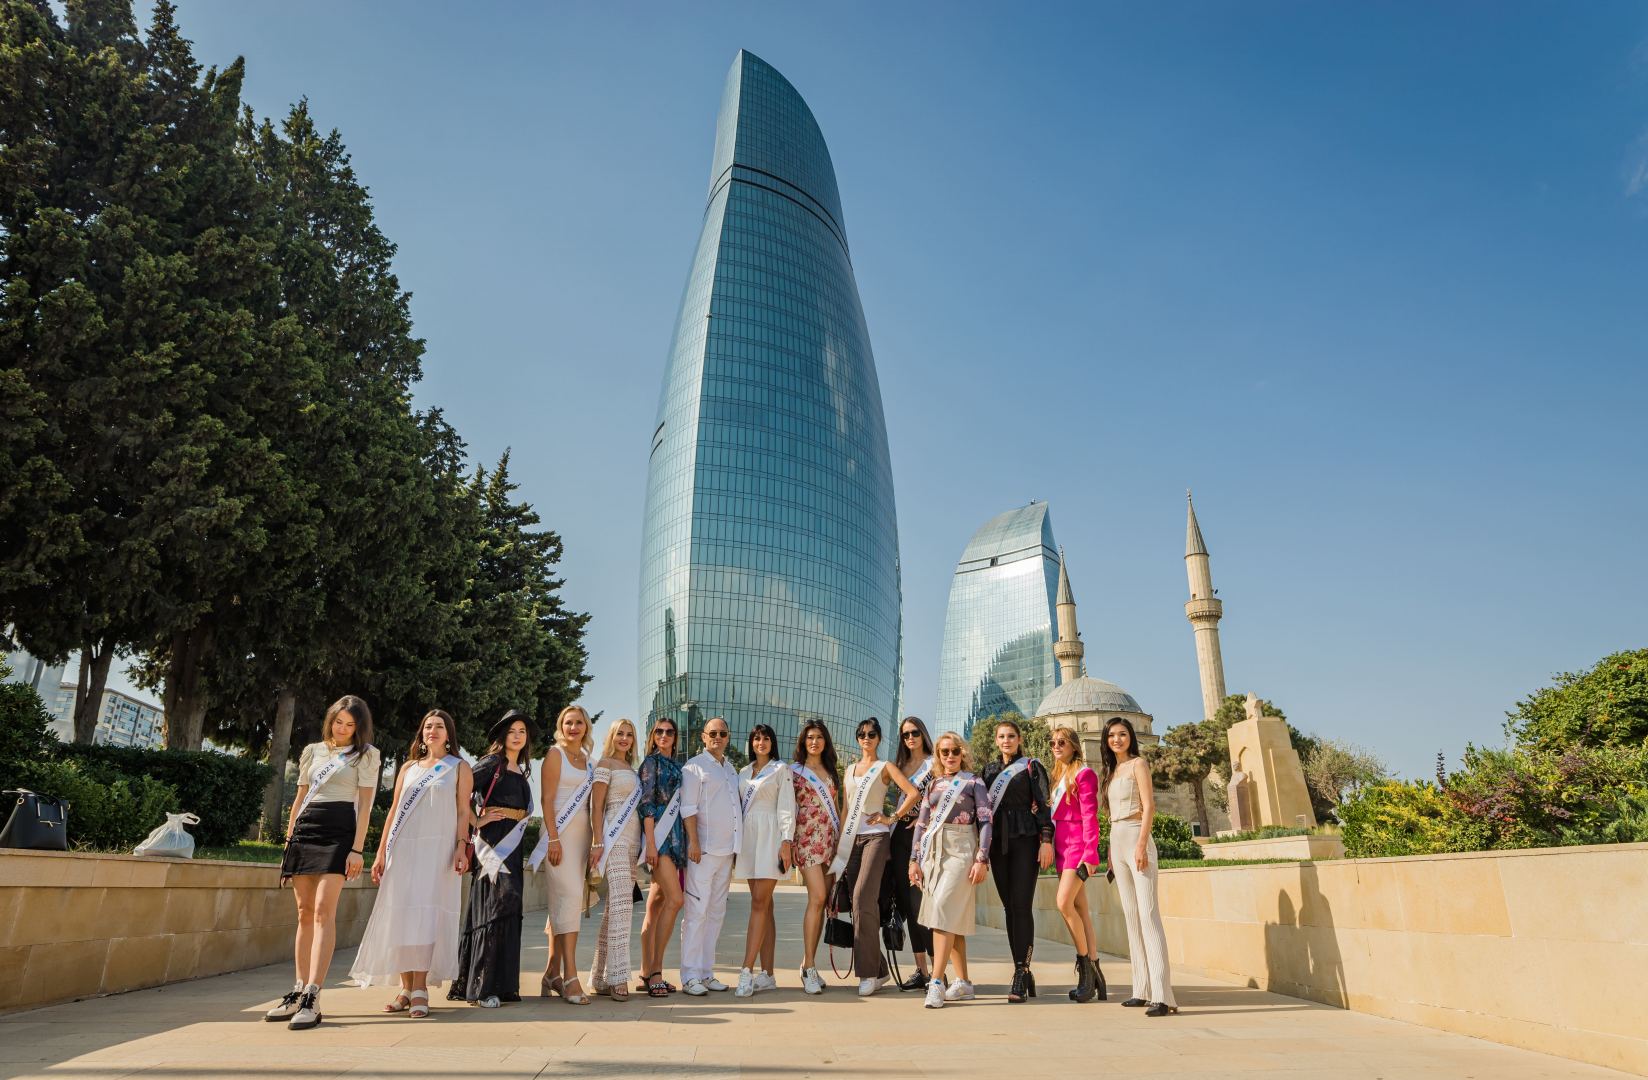 Конкурс красоты International Beauty and Model продемонстрирует миру туристический потенциал Азербайджана (ФОТО)